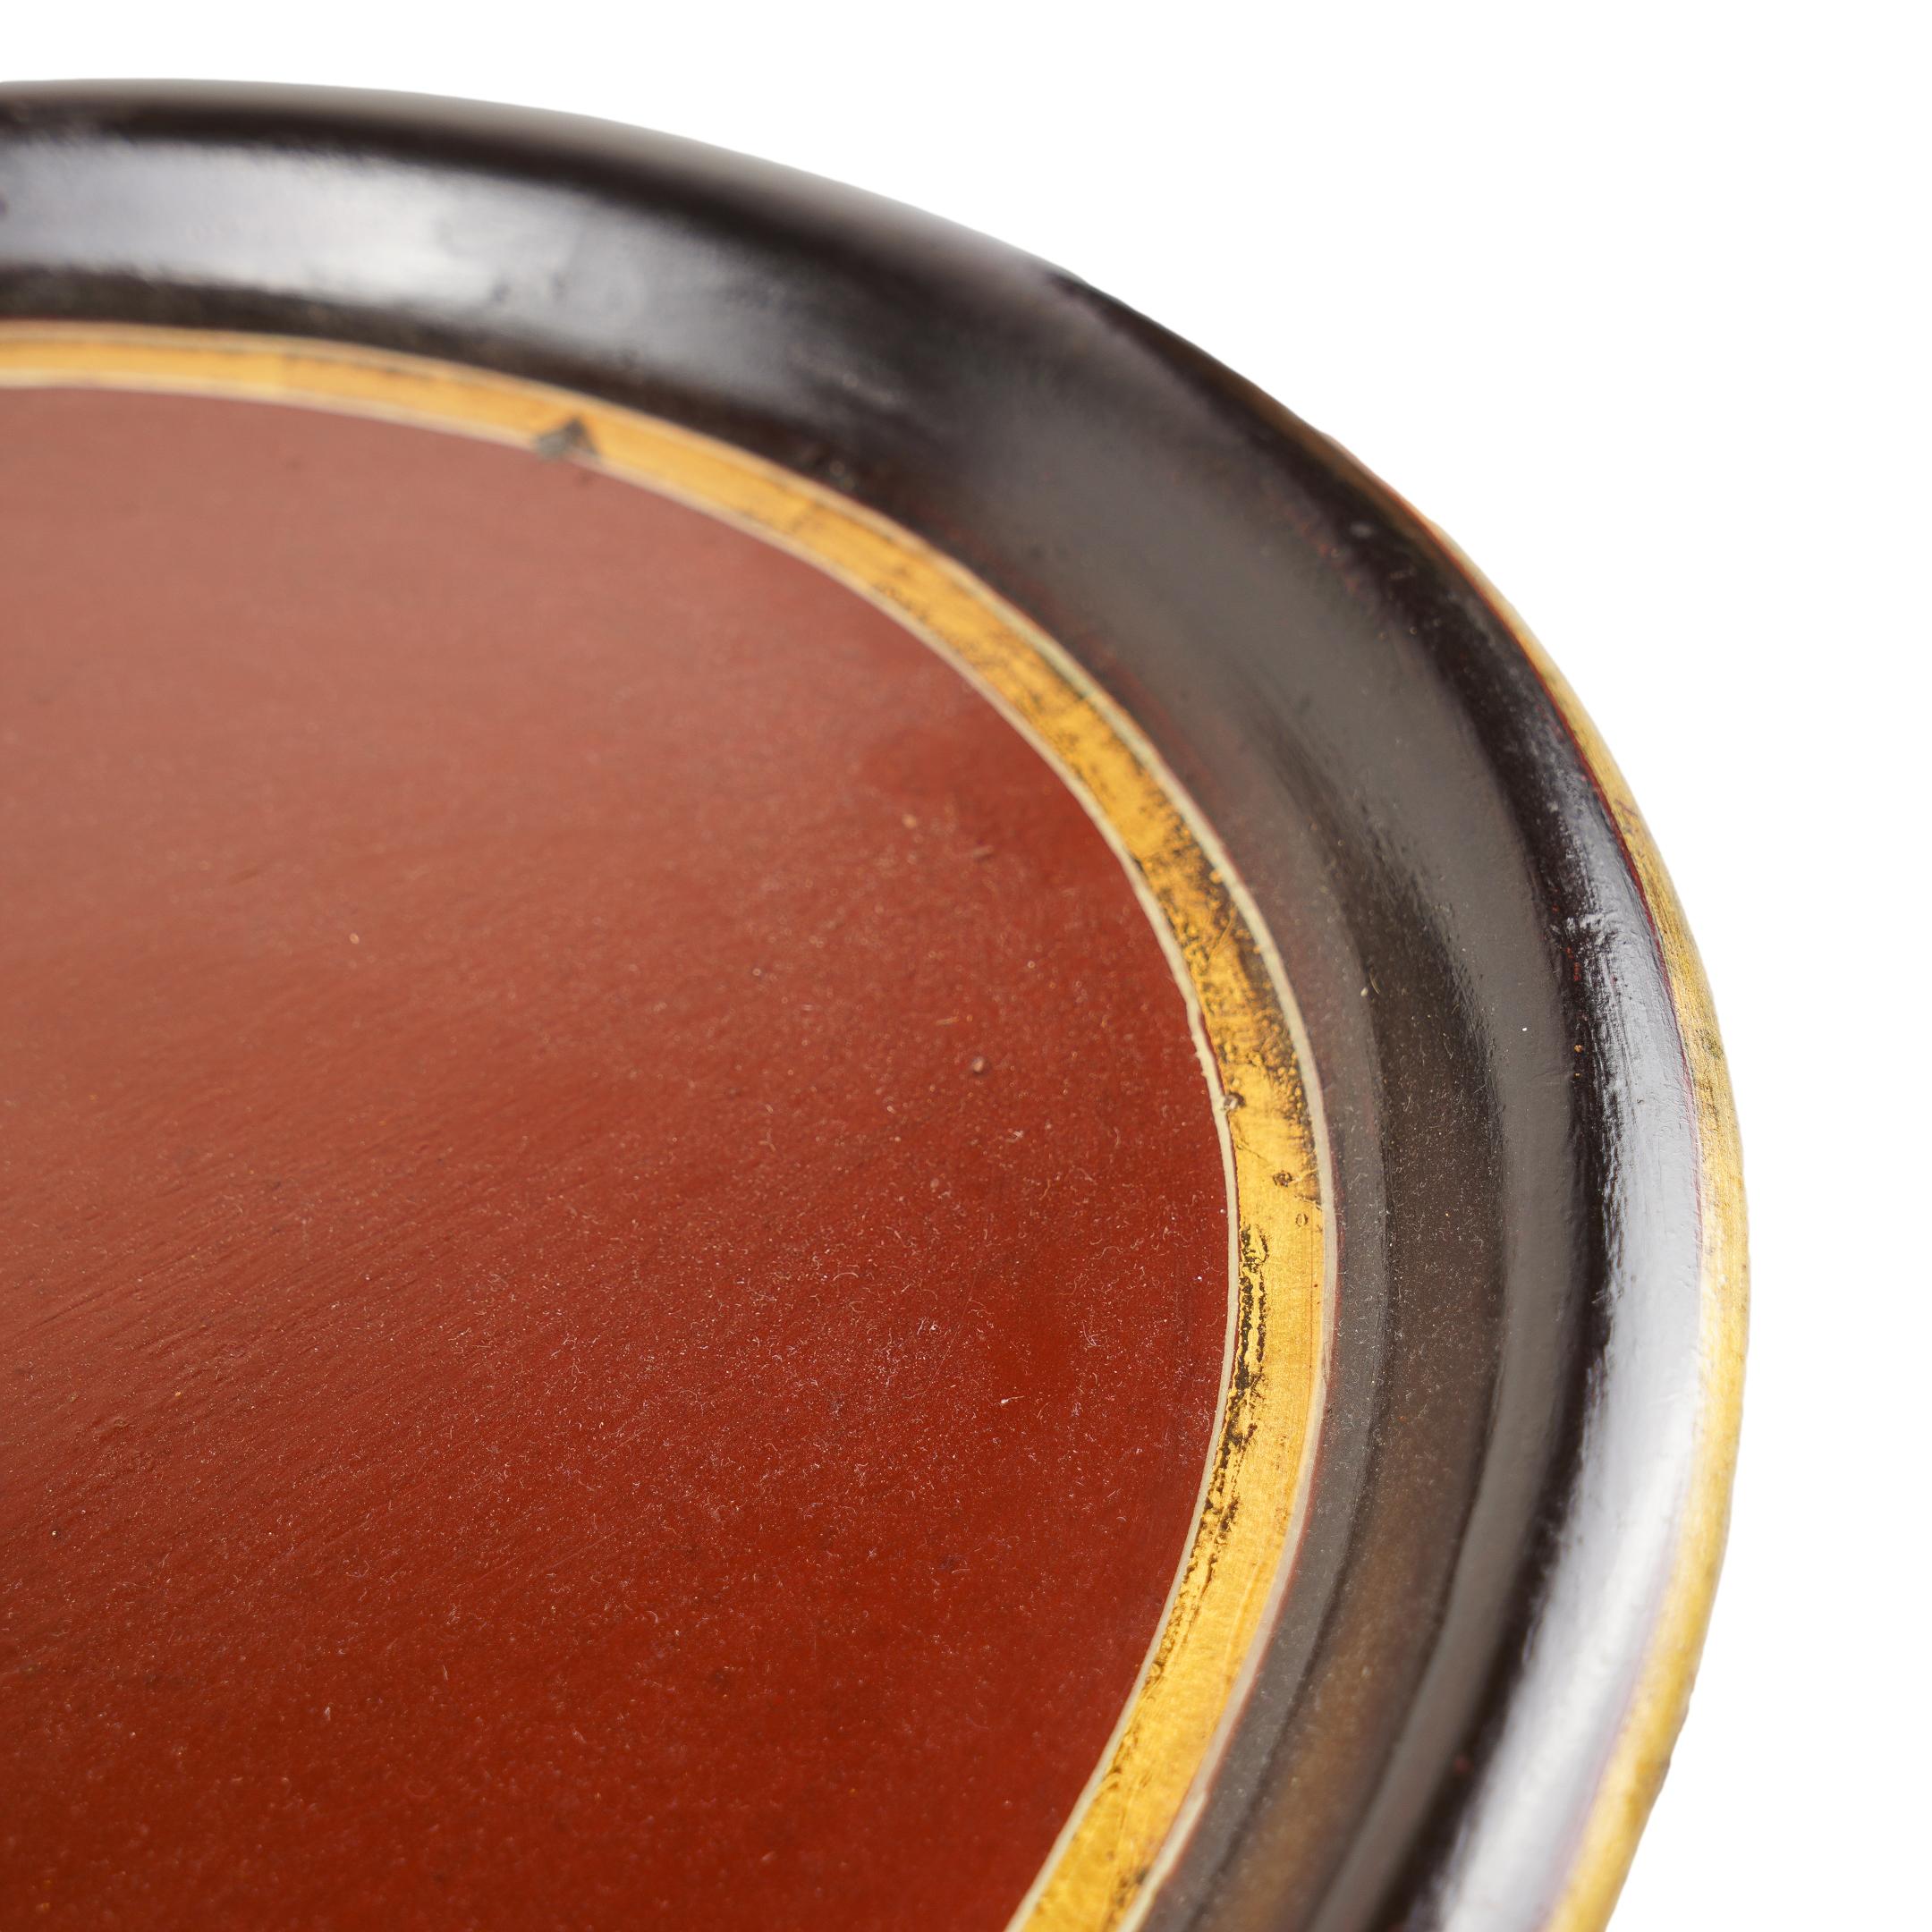 Ovales Teetablett mit vergoldetem Wappen in der Mitte auf burgunderfarbenem Grund, umrahmt von einem schwarzen Rand mit Goldborte.
Kontinental, wahrscheinlich italienisch, zweites Viertel 19. Jahrhundert.